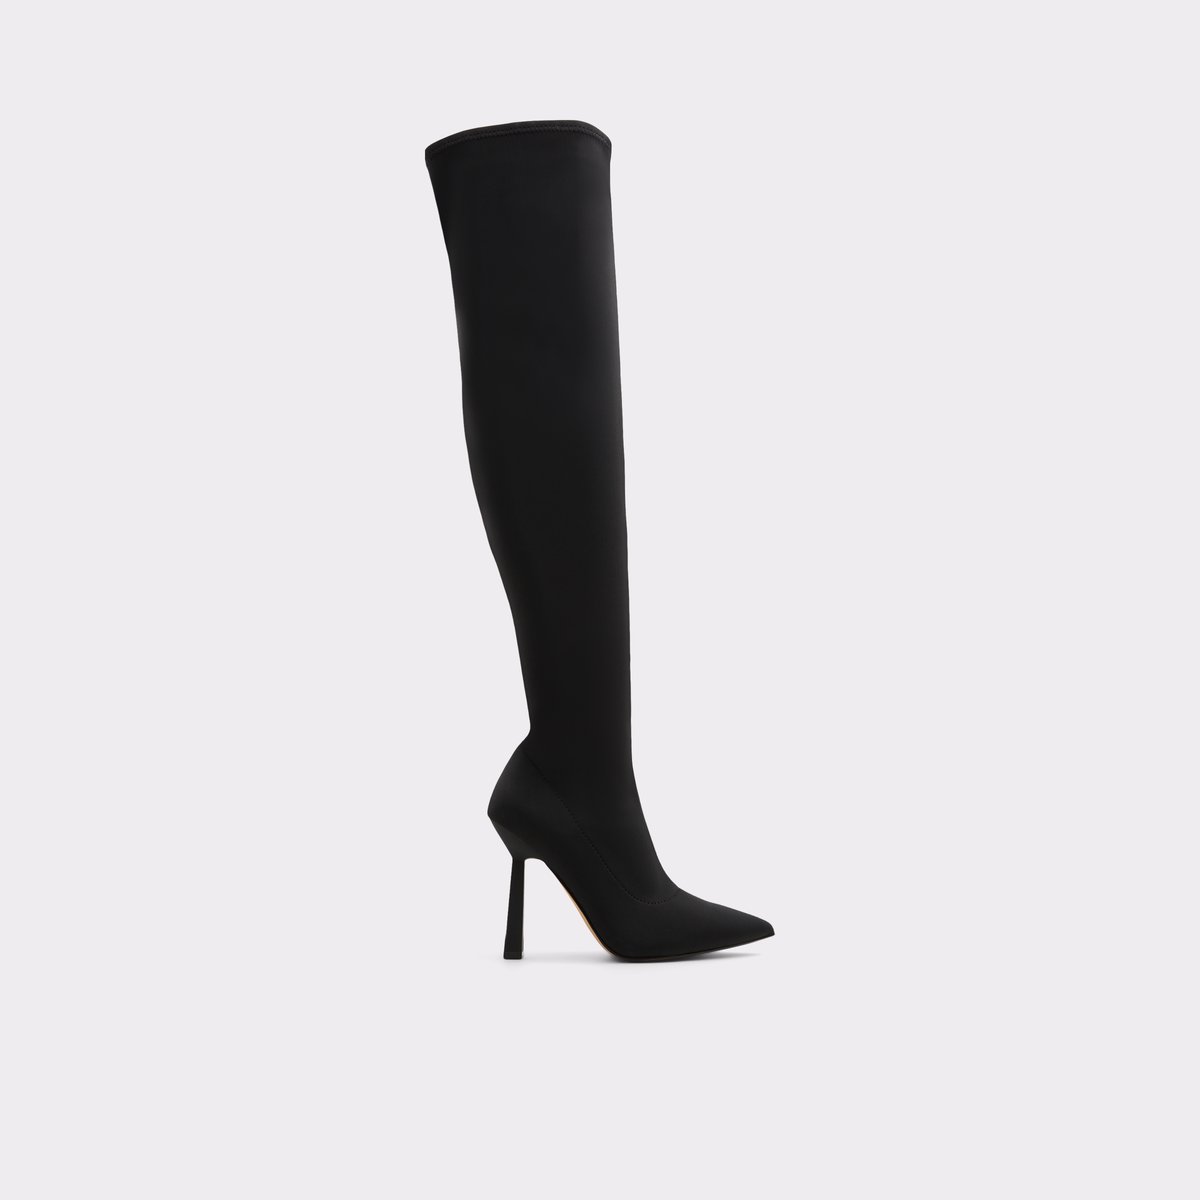 Nella Black Textile Women's Tall Boots | ALDO Canada